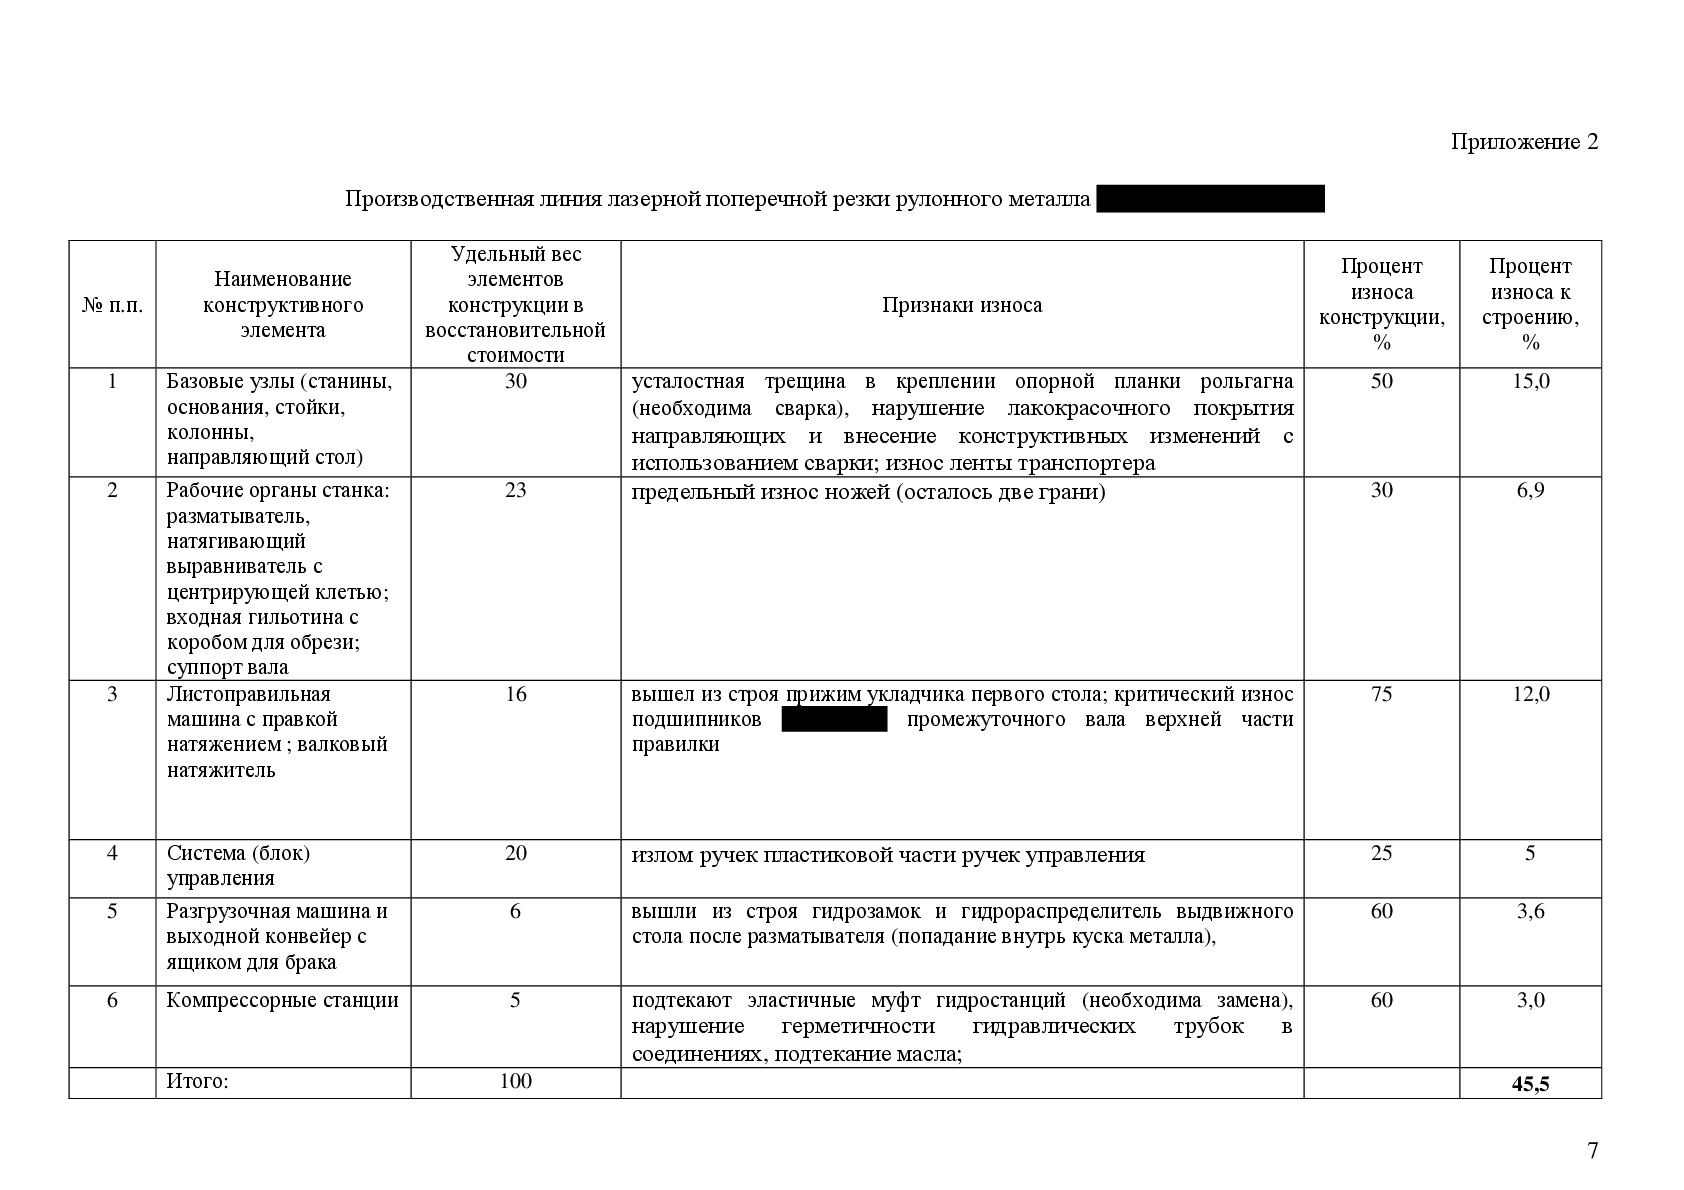 Оценка износа машин и оборудования в Иркутске